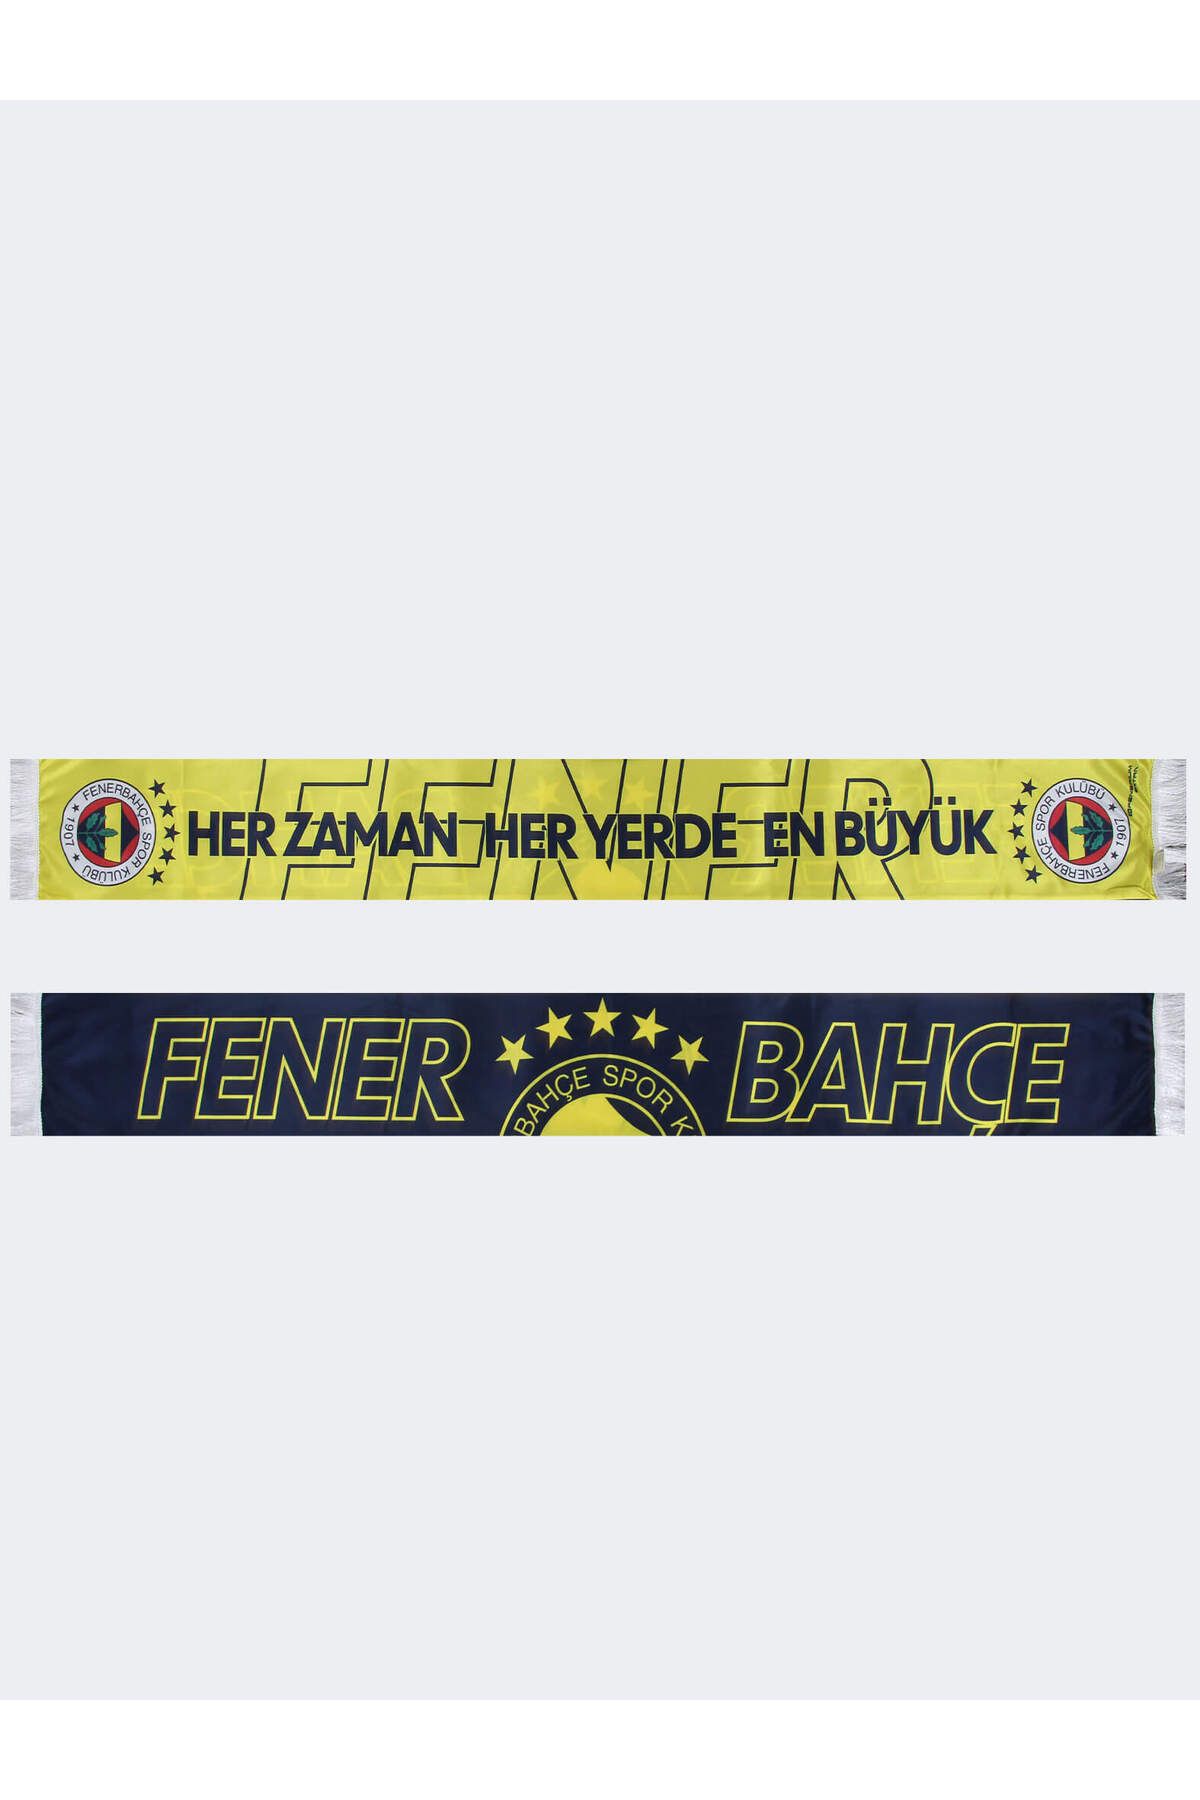 Fenerbahçe UNISEX 5 YILDIZ HER ZAMAN HER YERDE Ş